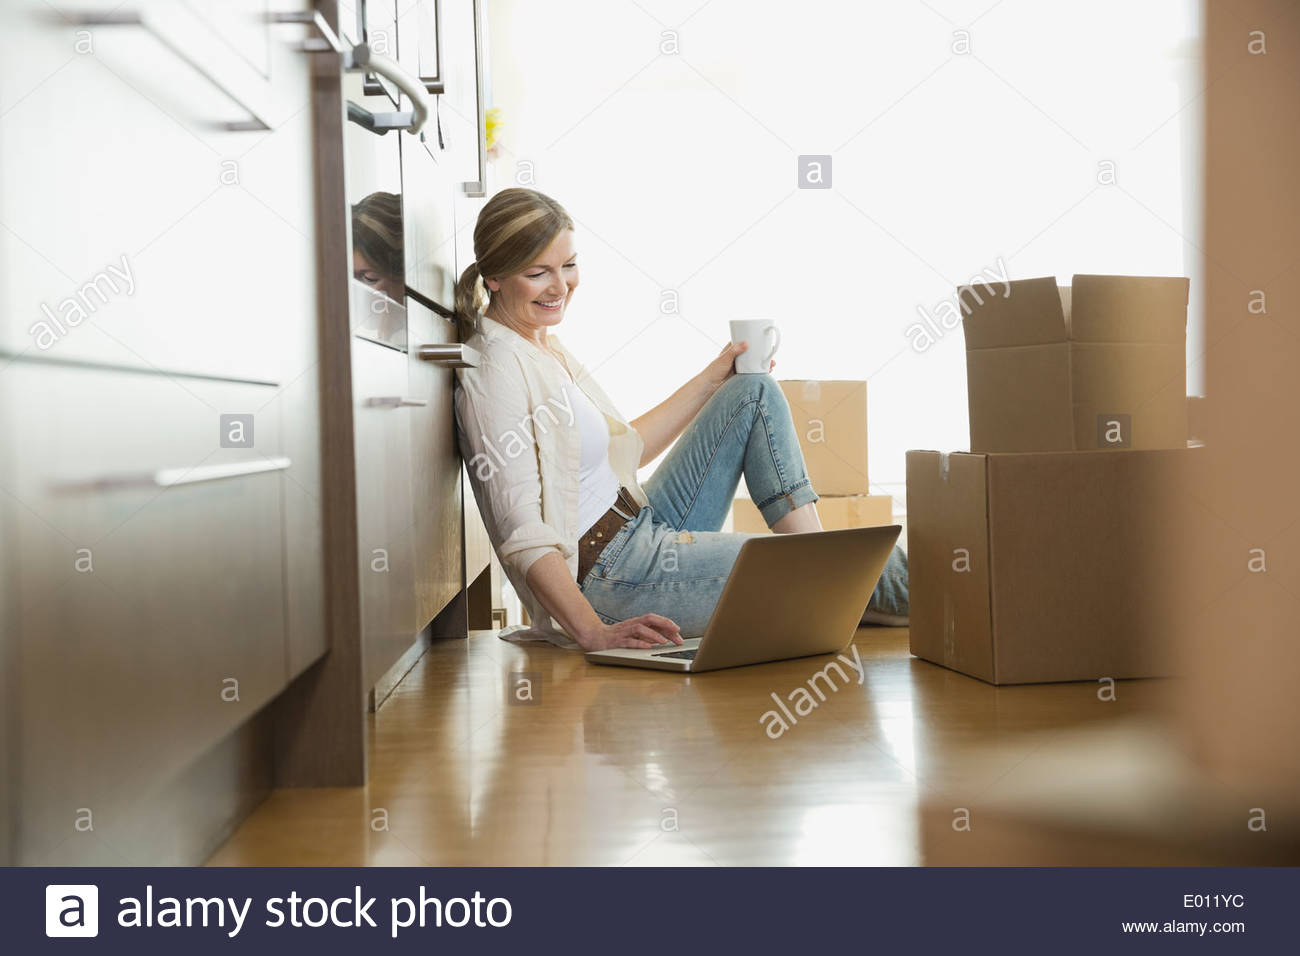 Frau mit Laptop am Boden in der Nähe von Umzugskartons Stockfoto